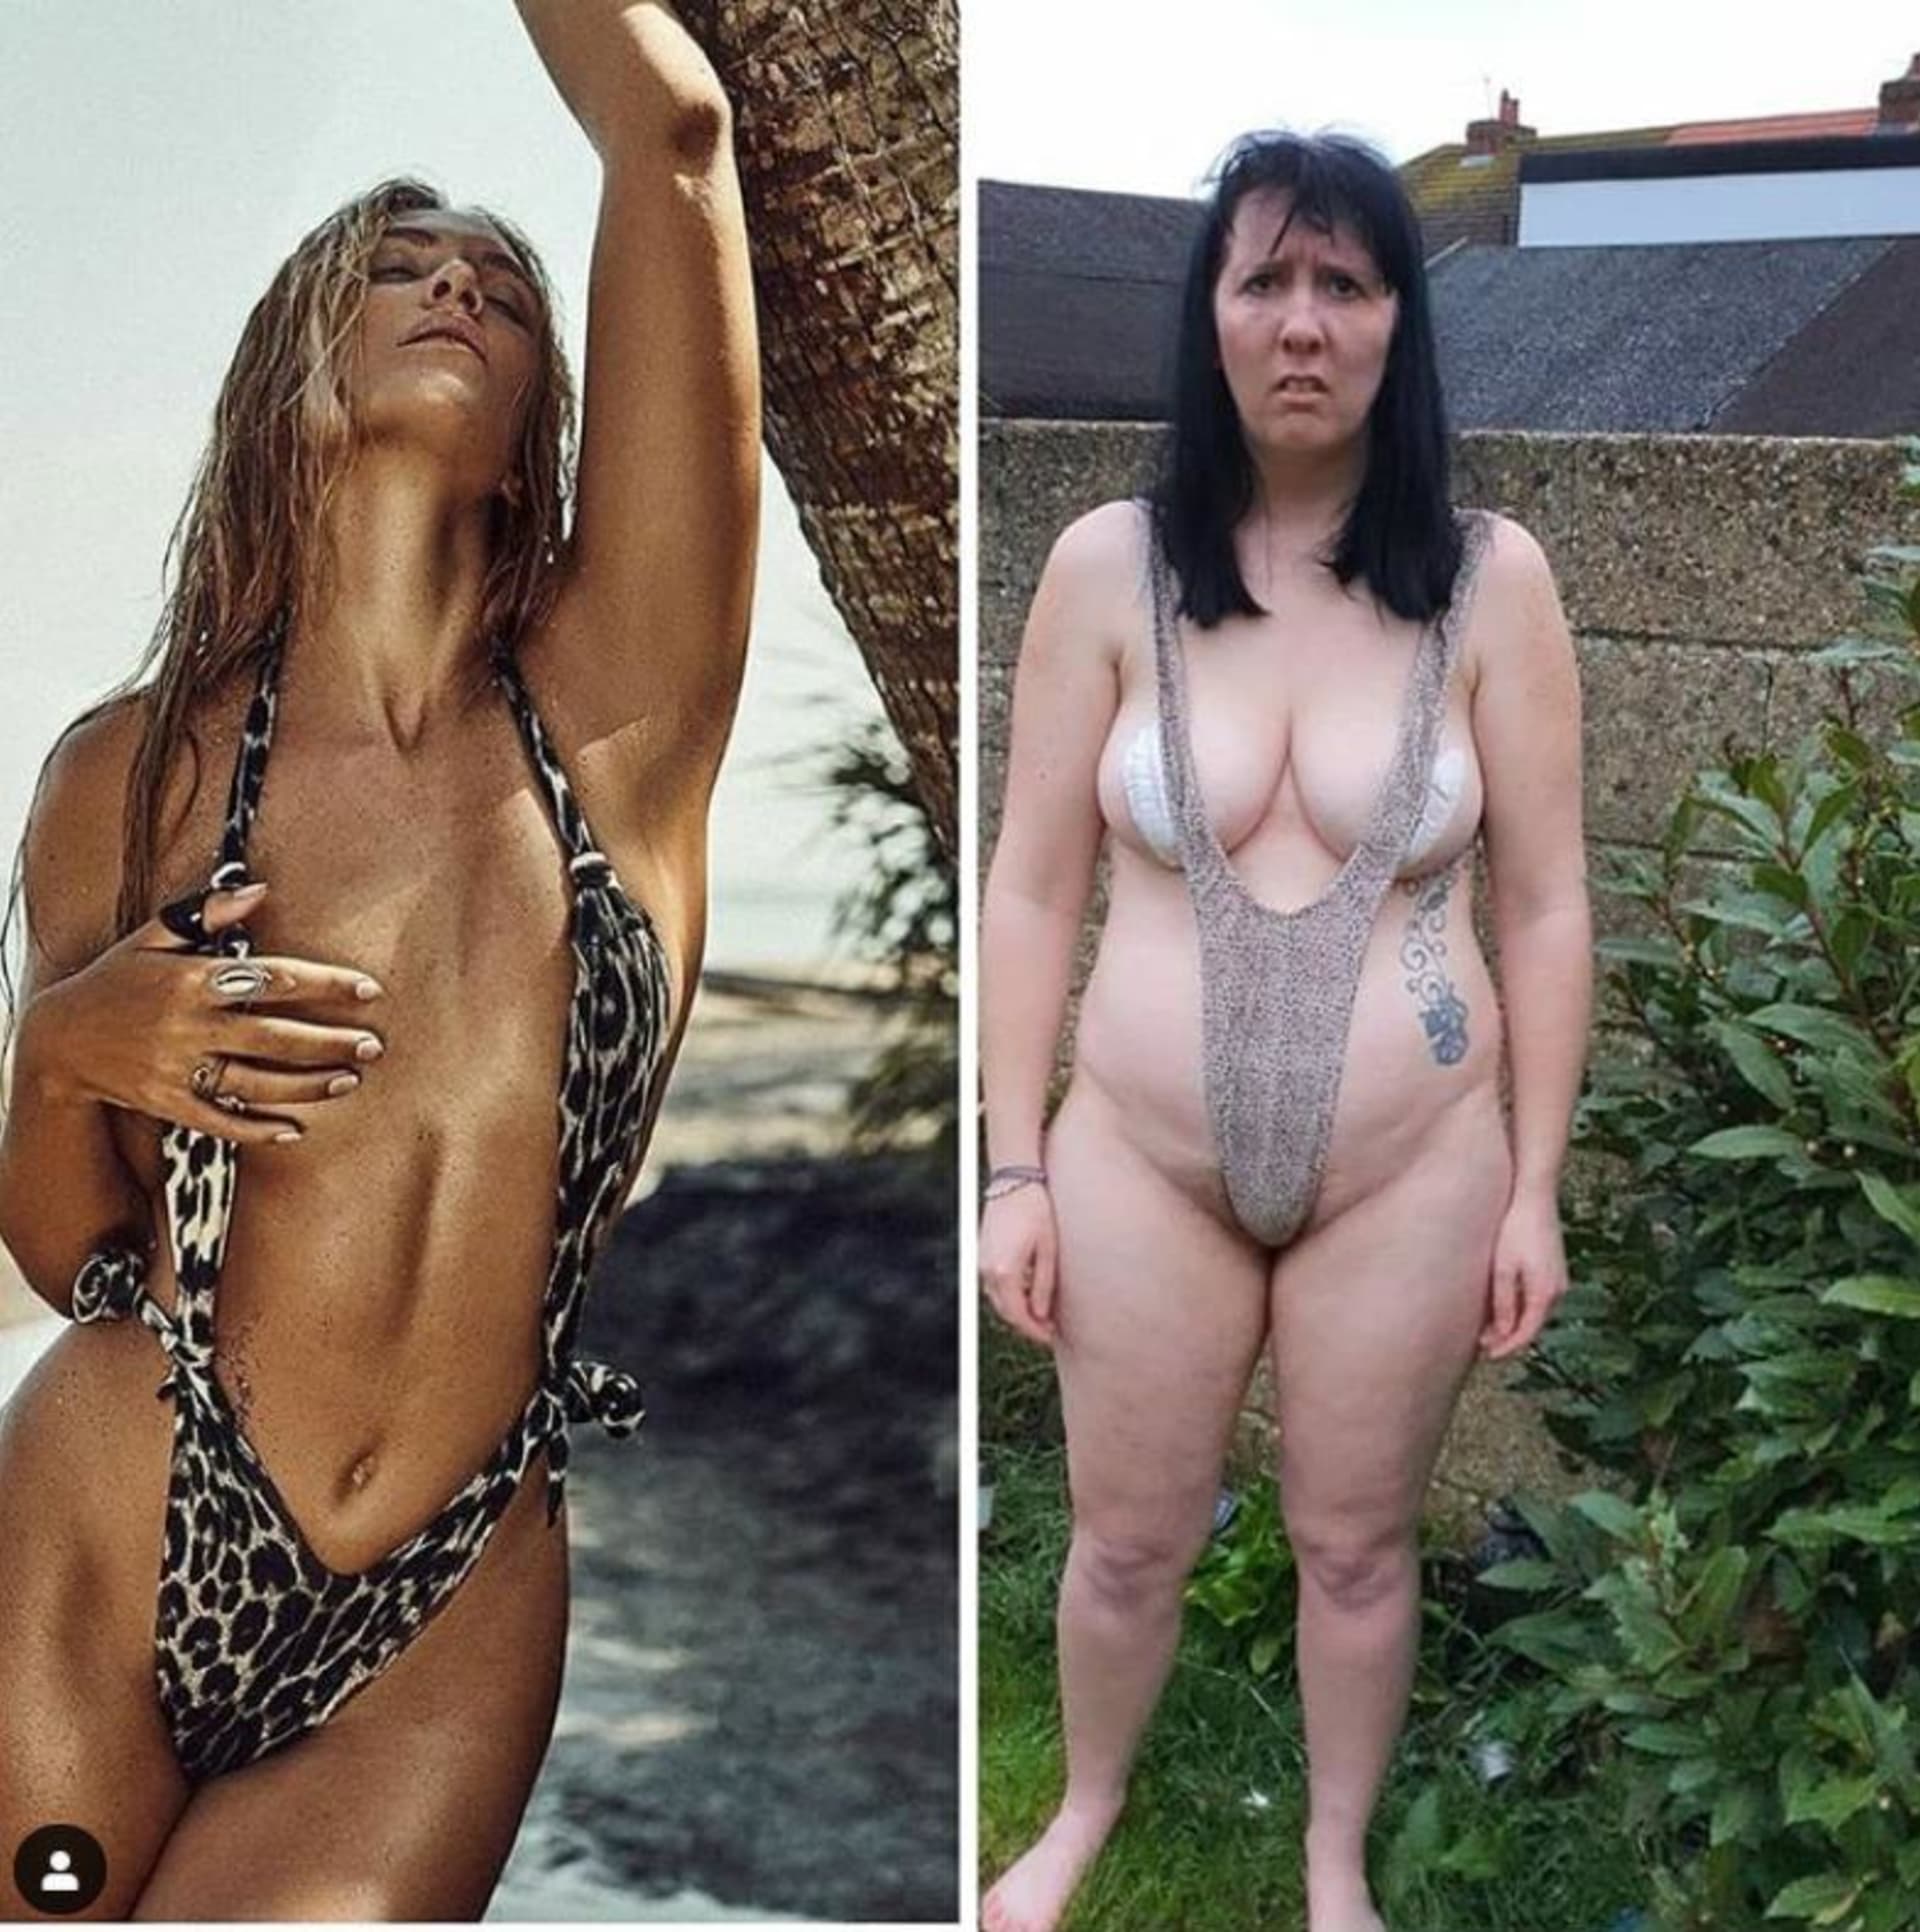 Žena paroduje fotky modelek na Instagramu 3